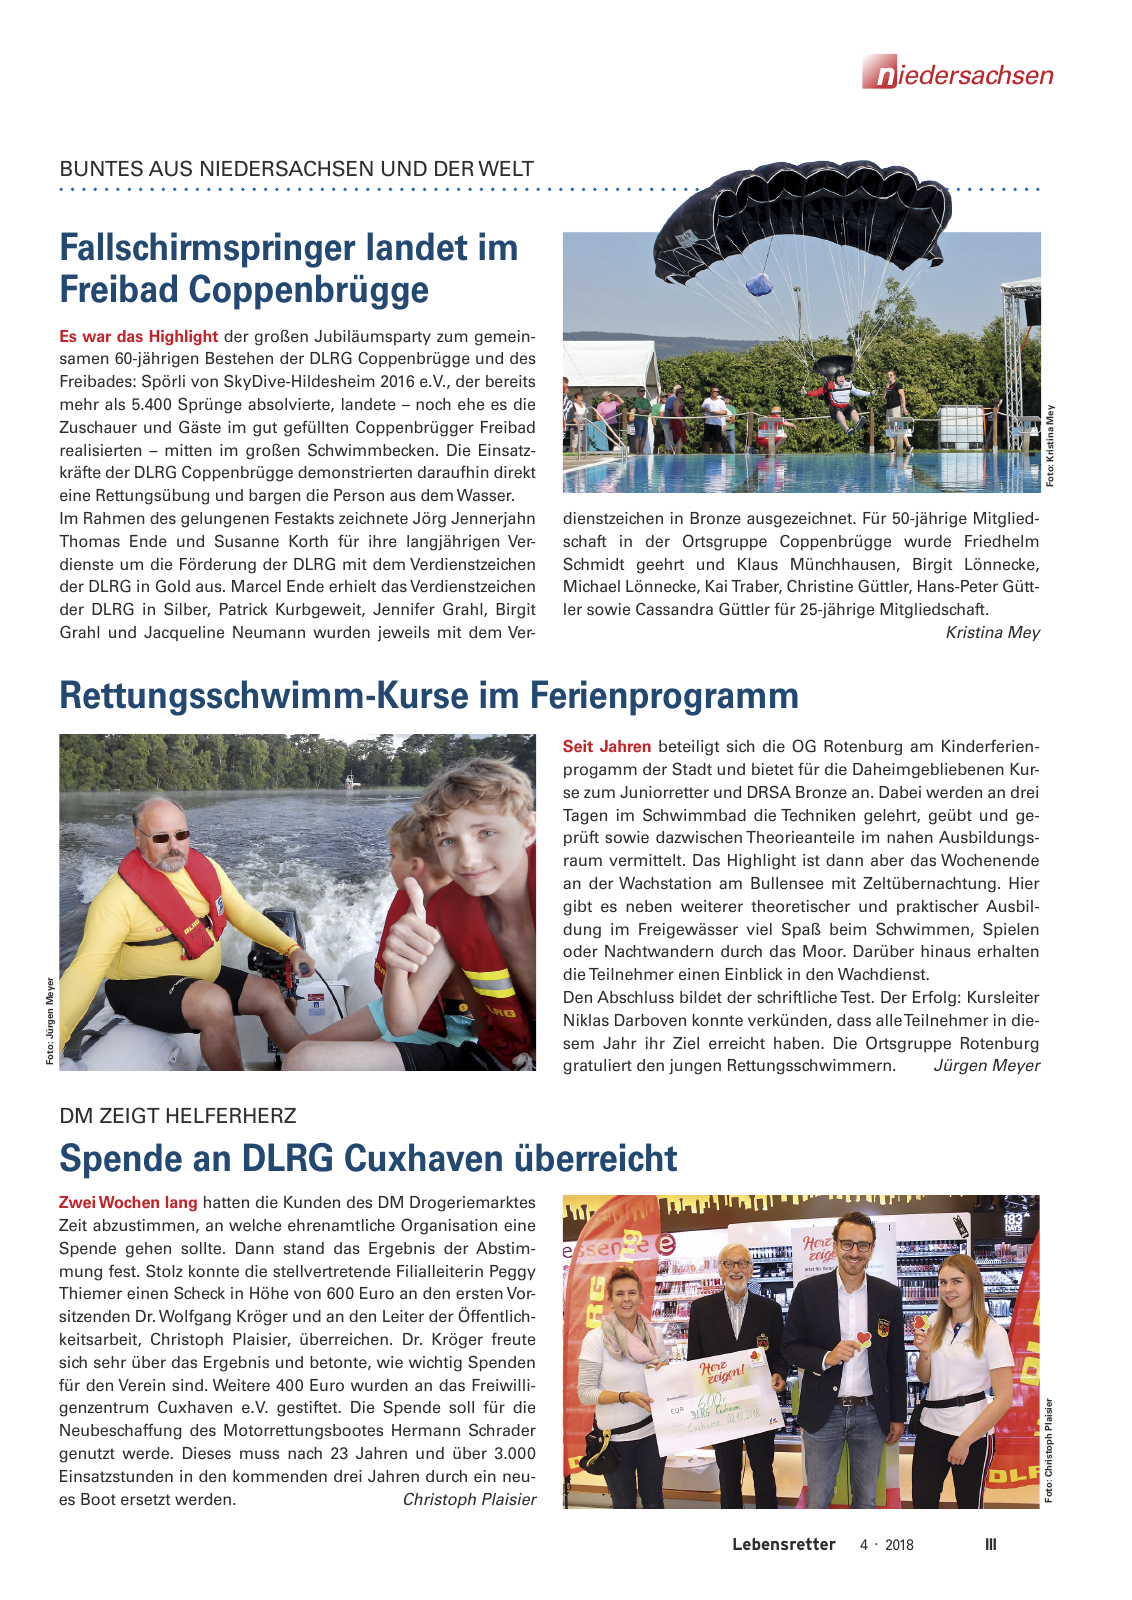 Vorschau Lebensretter 4/2018 - Regionalausgabe Niedersachsen Seite 5